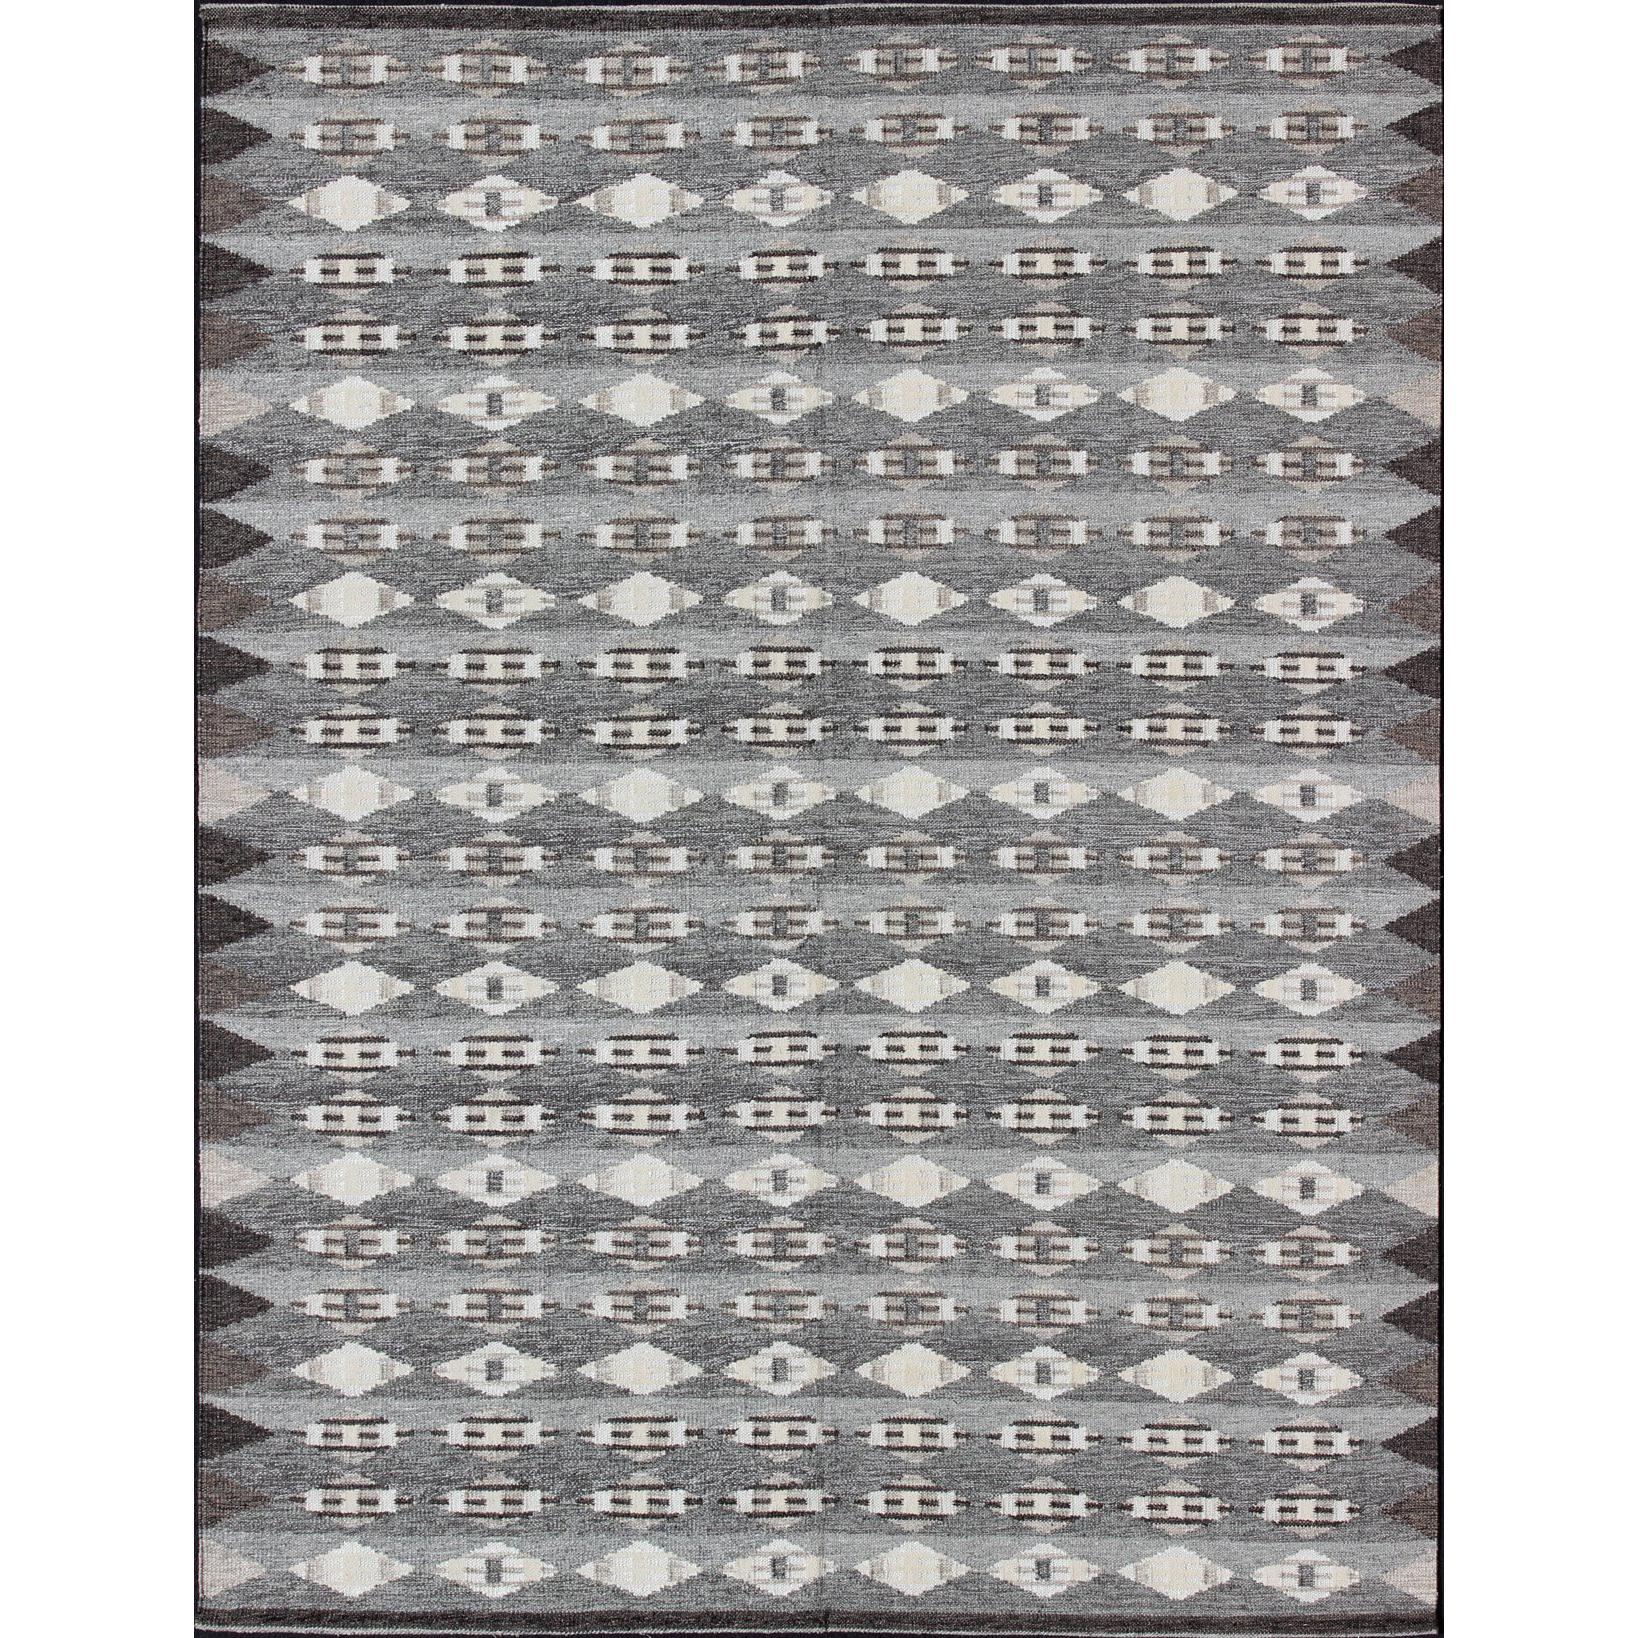 Grand tapis moderne scandinave/suédois à motifs géométriques en gris et marron 